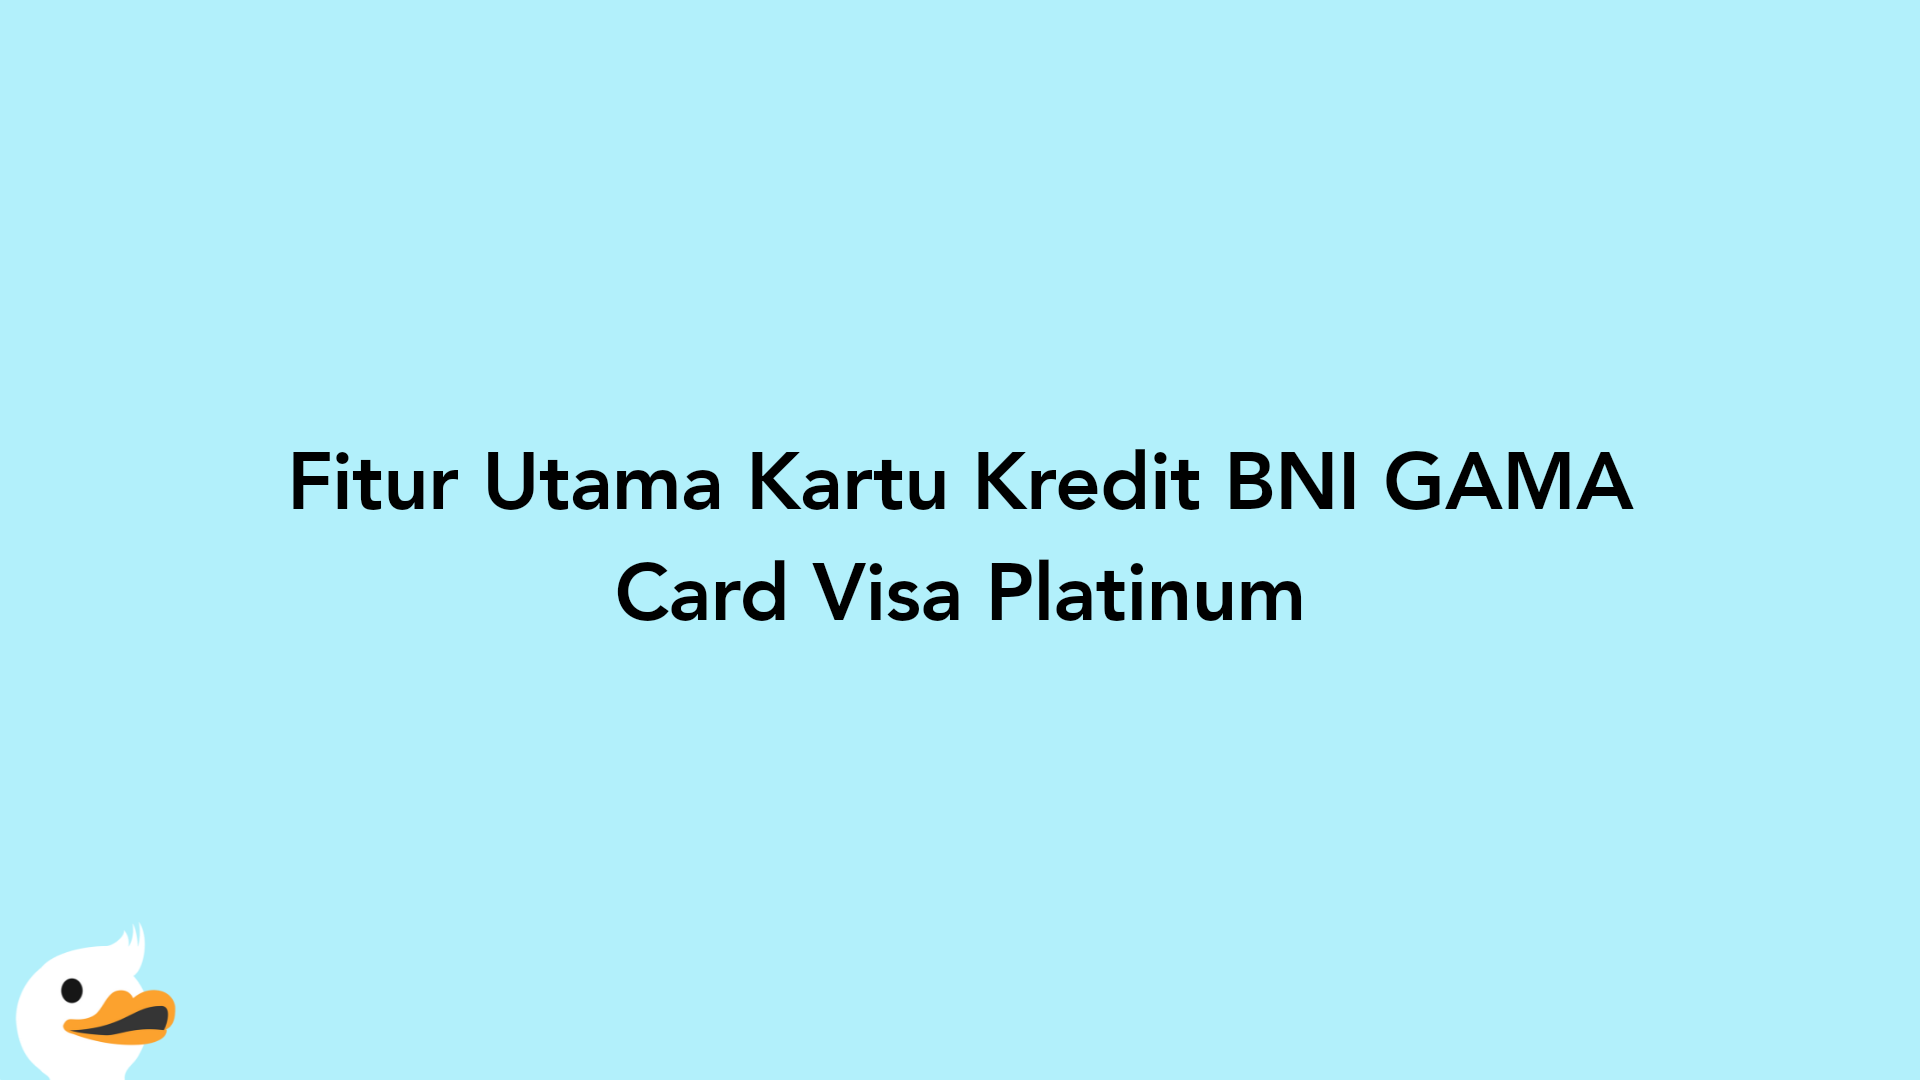 Fitur Utama Kartu Kredit BNI GAMA Card Visa Platinum